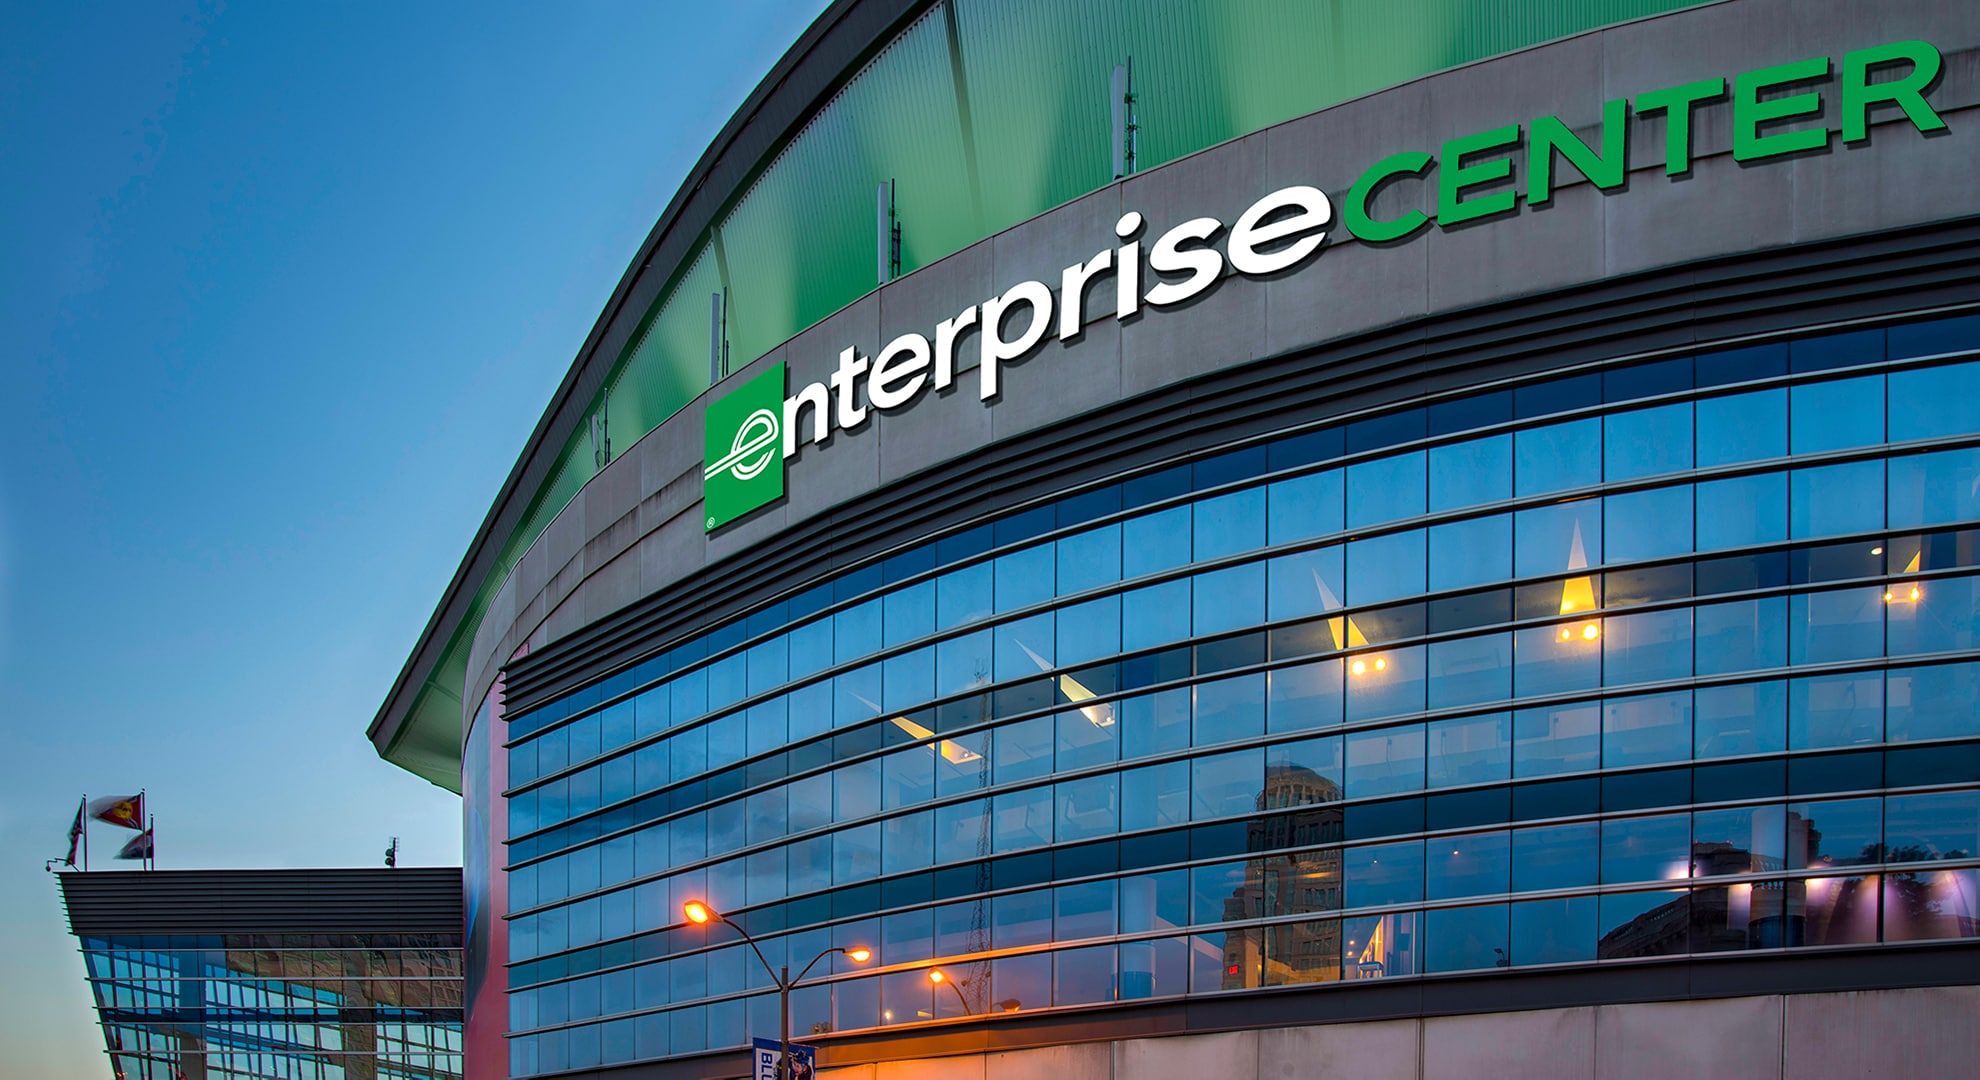 Enterprise Center Enterprise RentACar